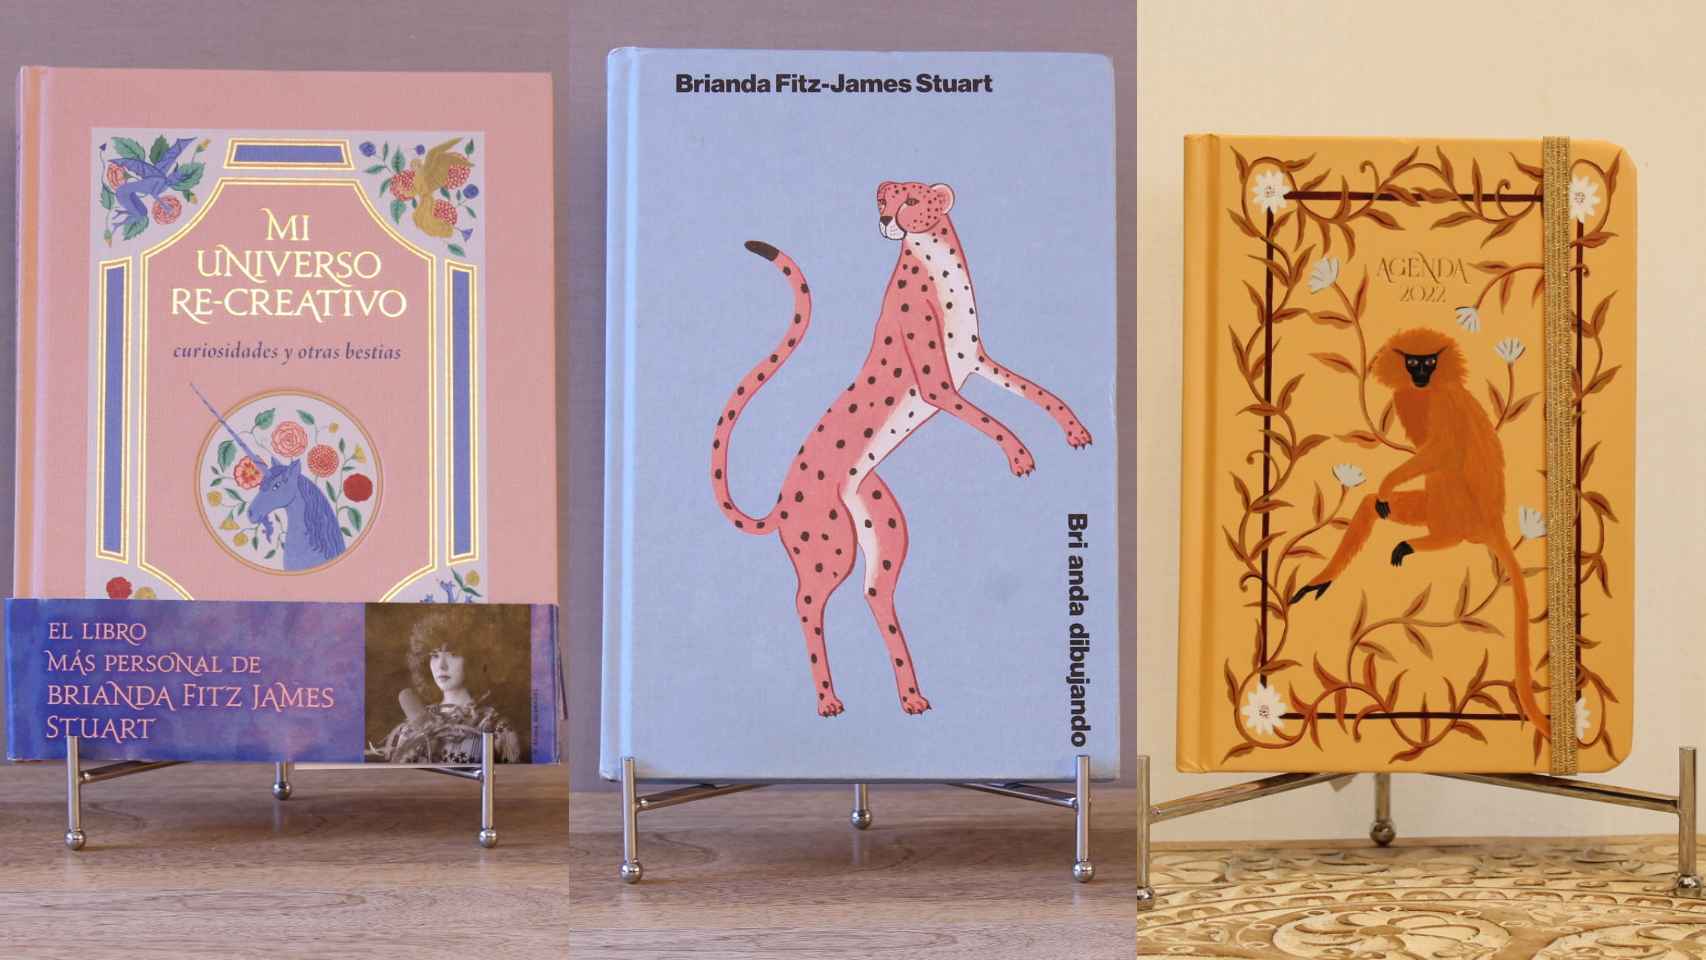 Tres de los libros de Brianda Fitz-James que se pueden adquirir en la tienda de su madre.